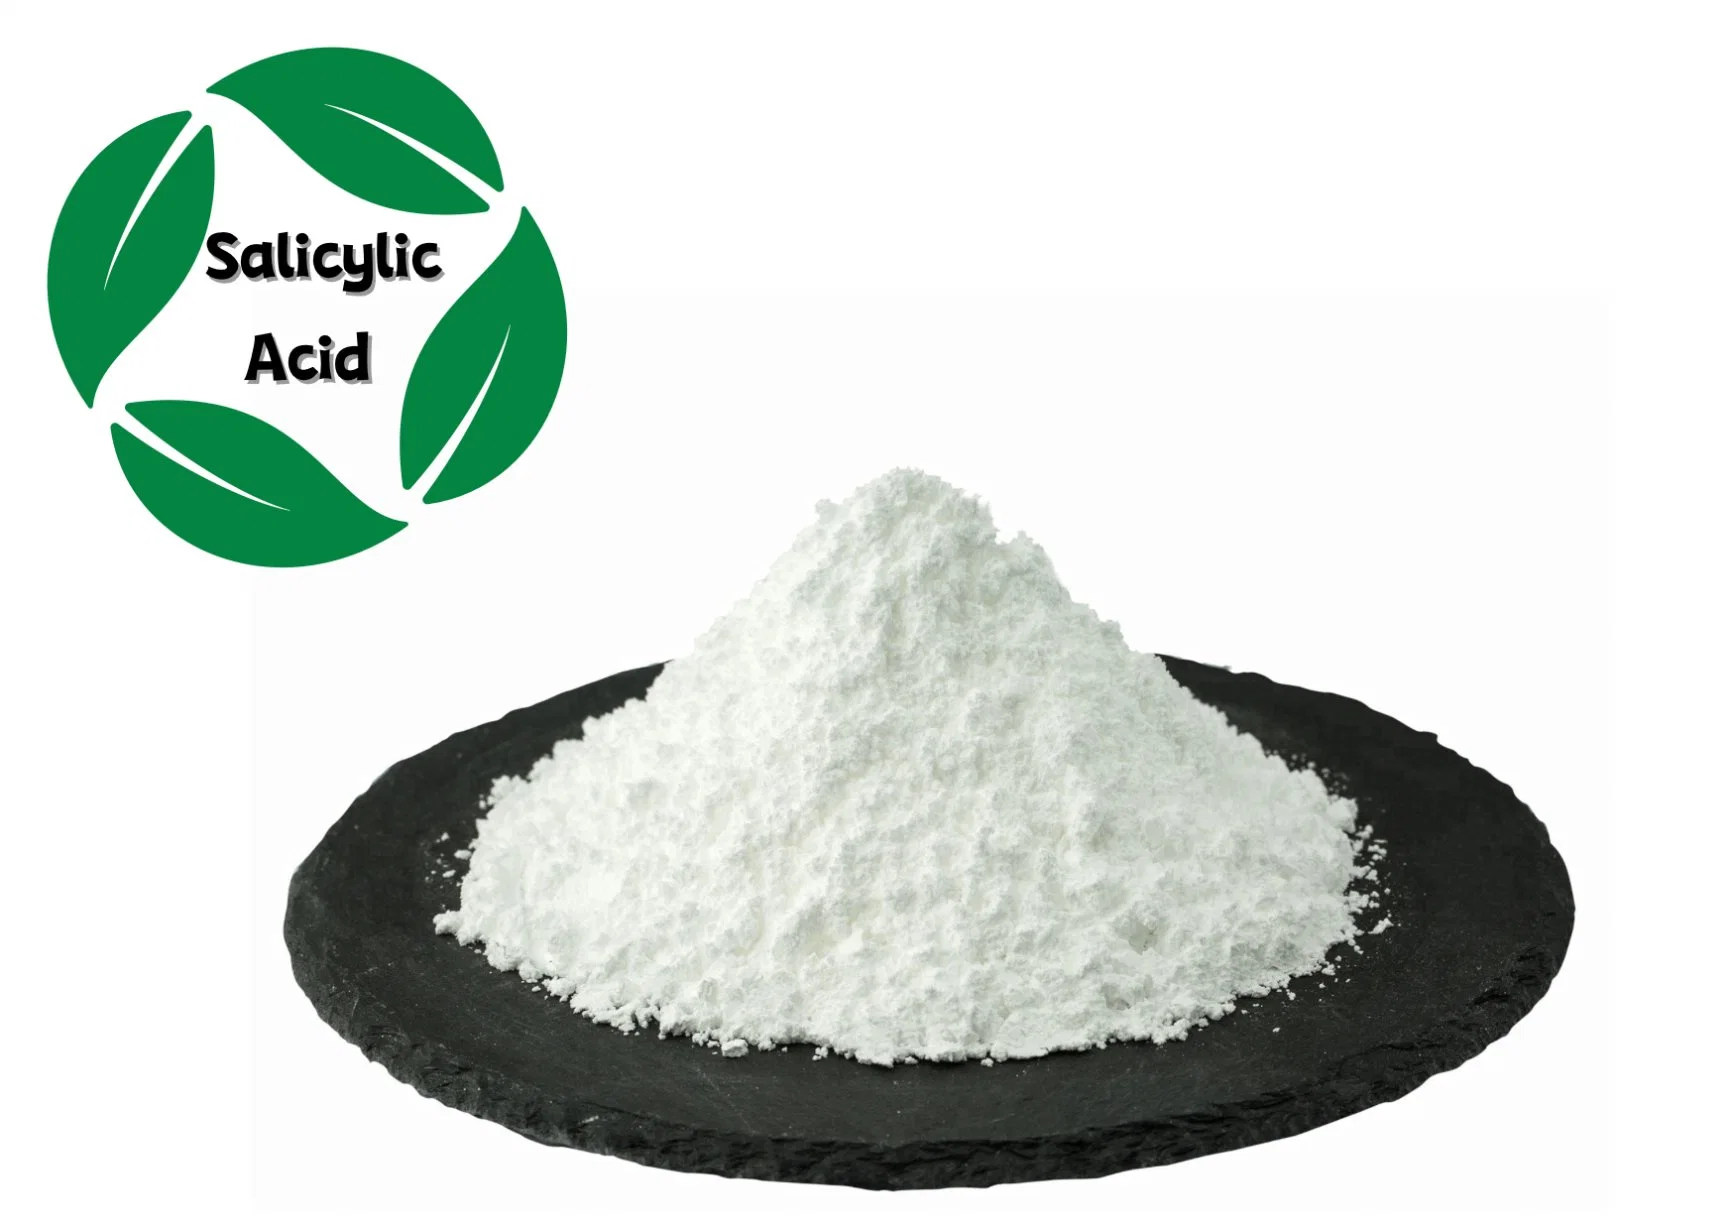 High Quality CAS 69-72-7 C7h6o3 Salicylic Acid